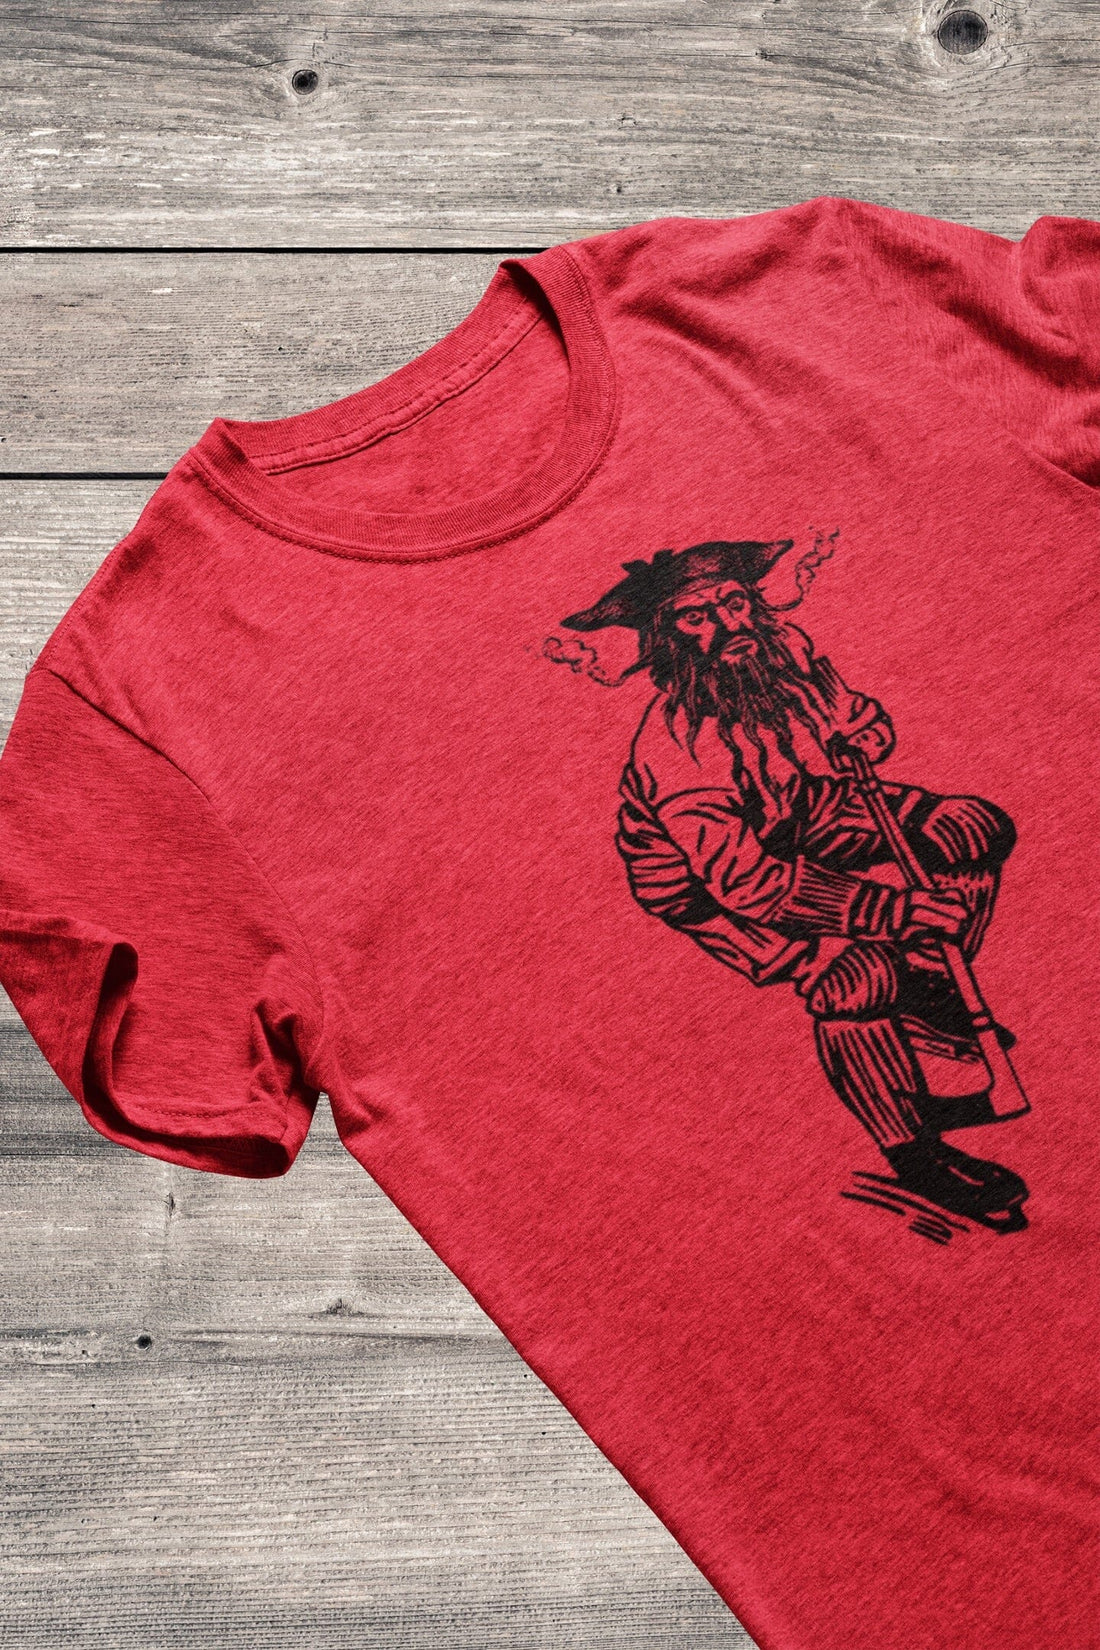 Blackbeard Hockey Shirt and Hoodies are here!